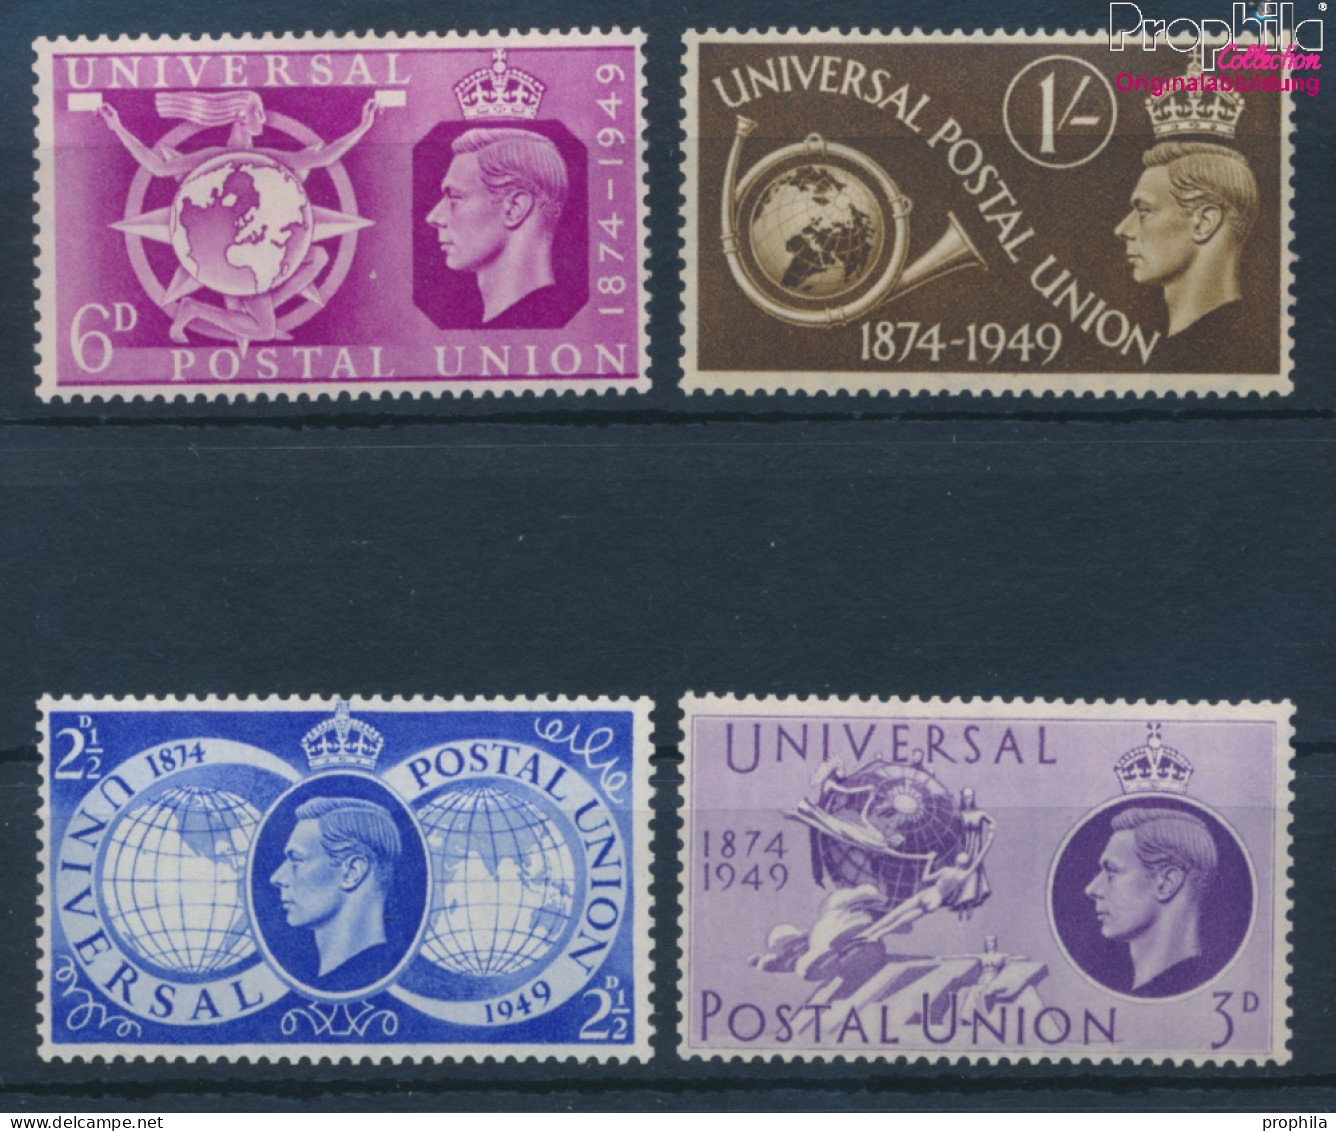 Großbritannien 241-244 (kompl.Ausg.) Postfrisch 1949 75 Jahre UPU (10398203 - Neufs